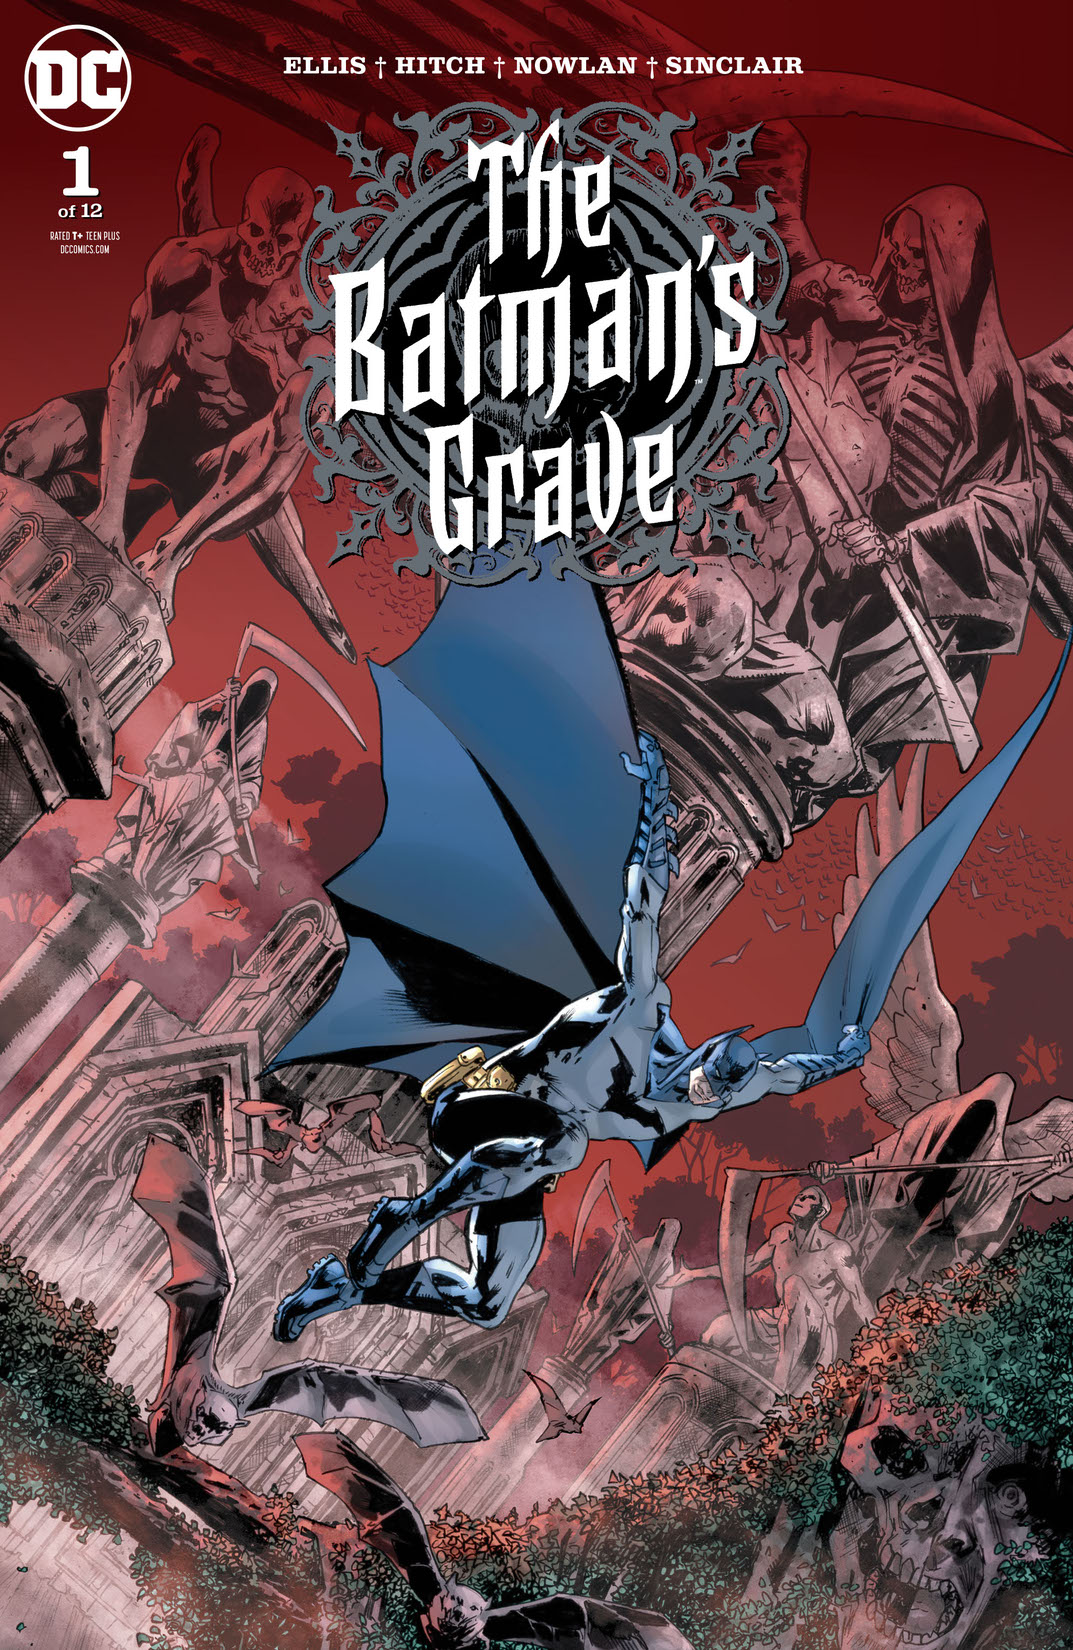 The Batman's Grave #1 preview images